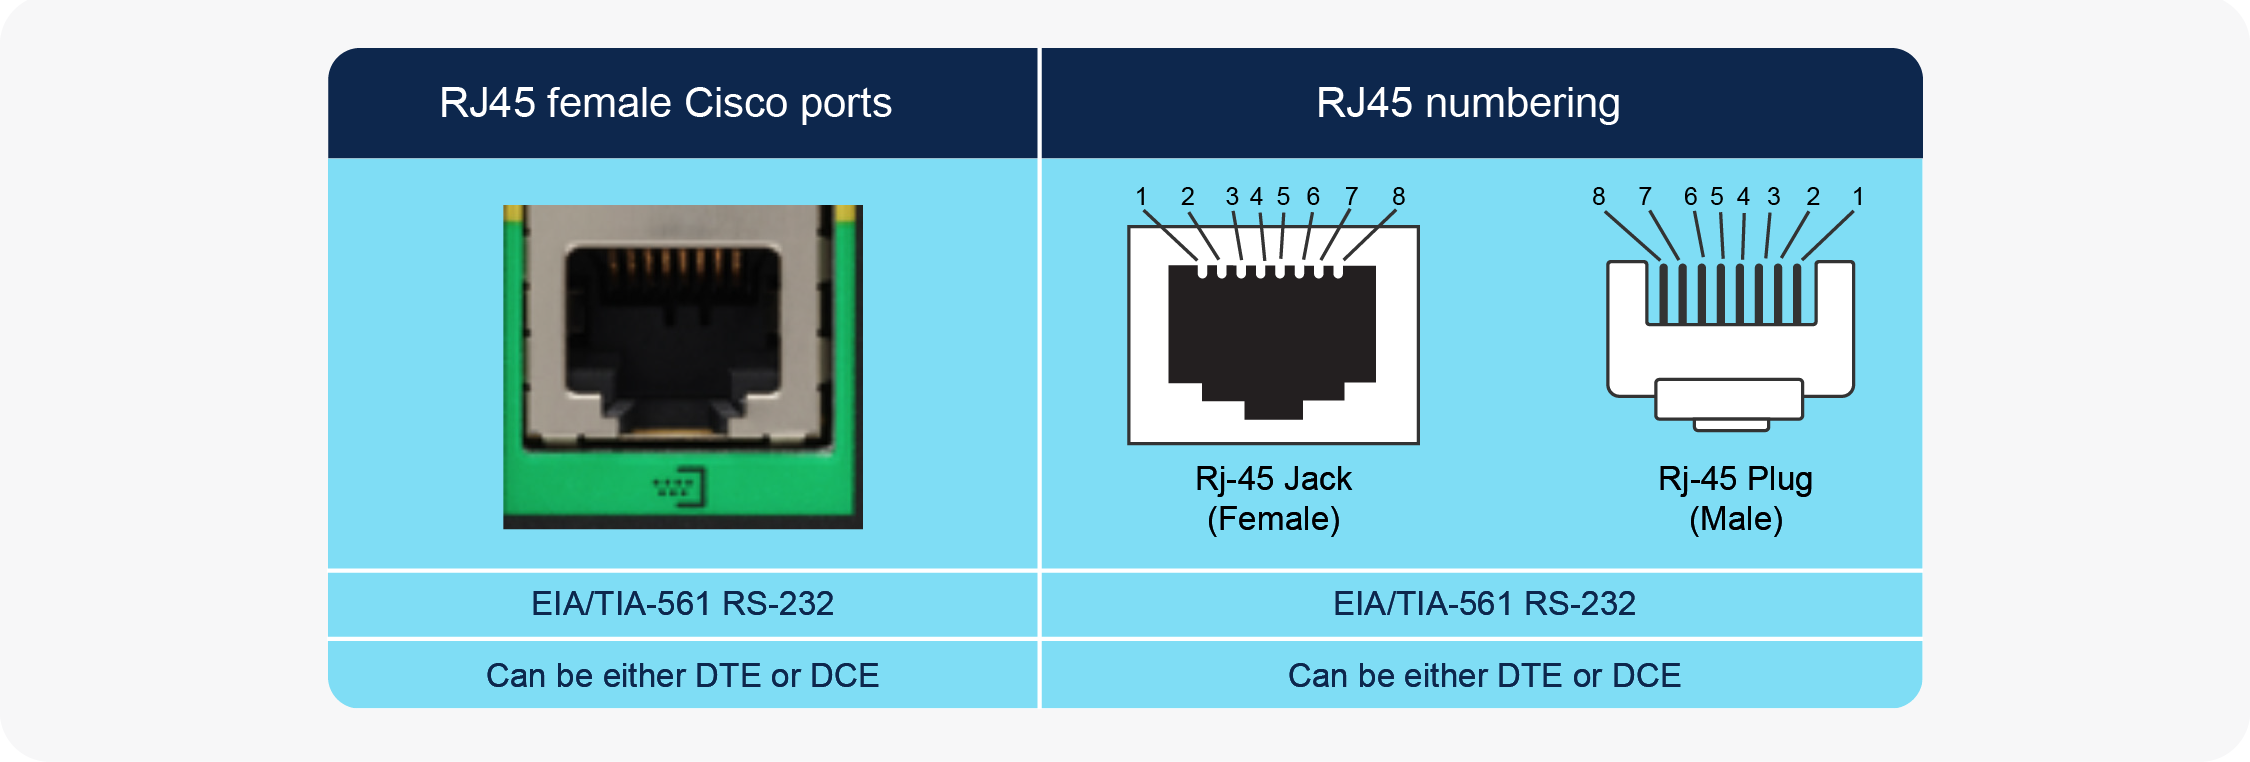 Cisco RJ45 ports